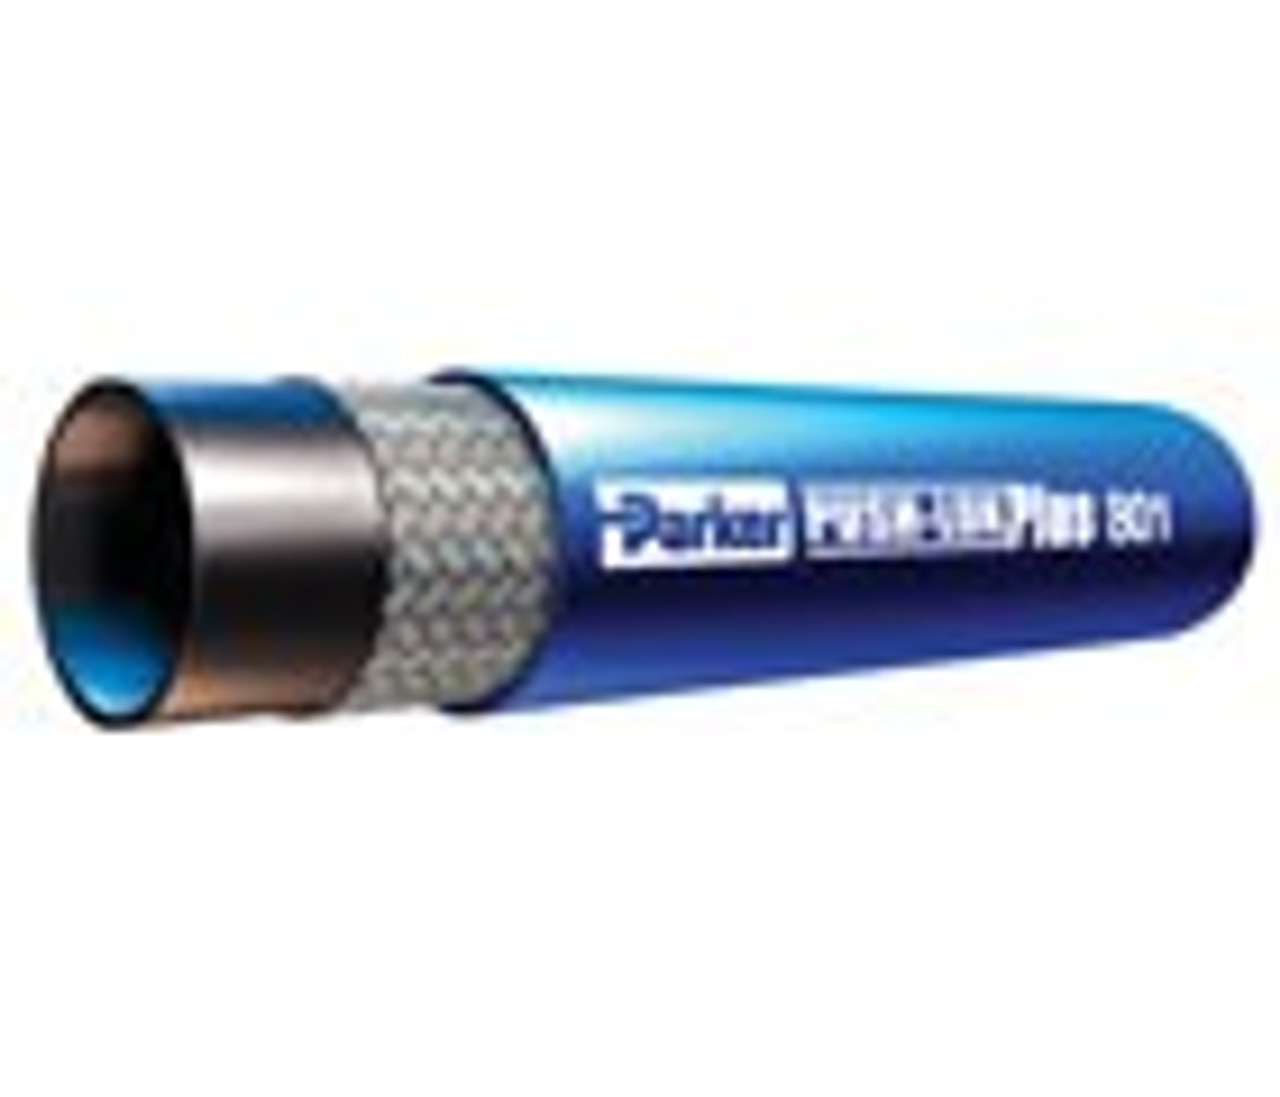 Parker 801-8-Blk-Rl 1/2" Id Push-Lok Hose Synthetic Rubber Cover 250Psi (17Bar) 1 Fiber Braid Temp Range Degrees F: (-40/+212) Black